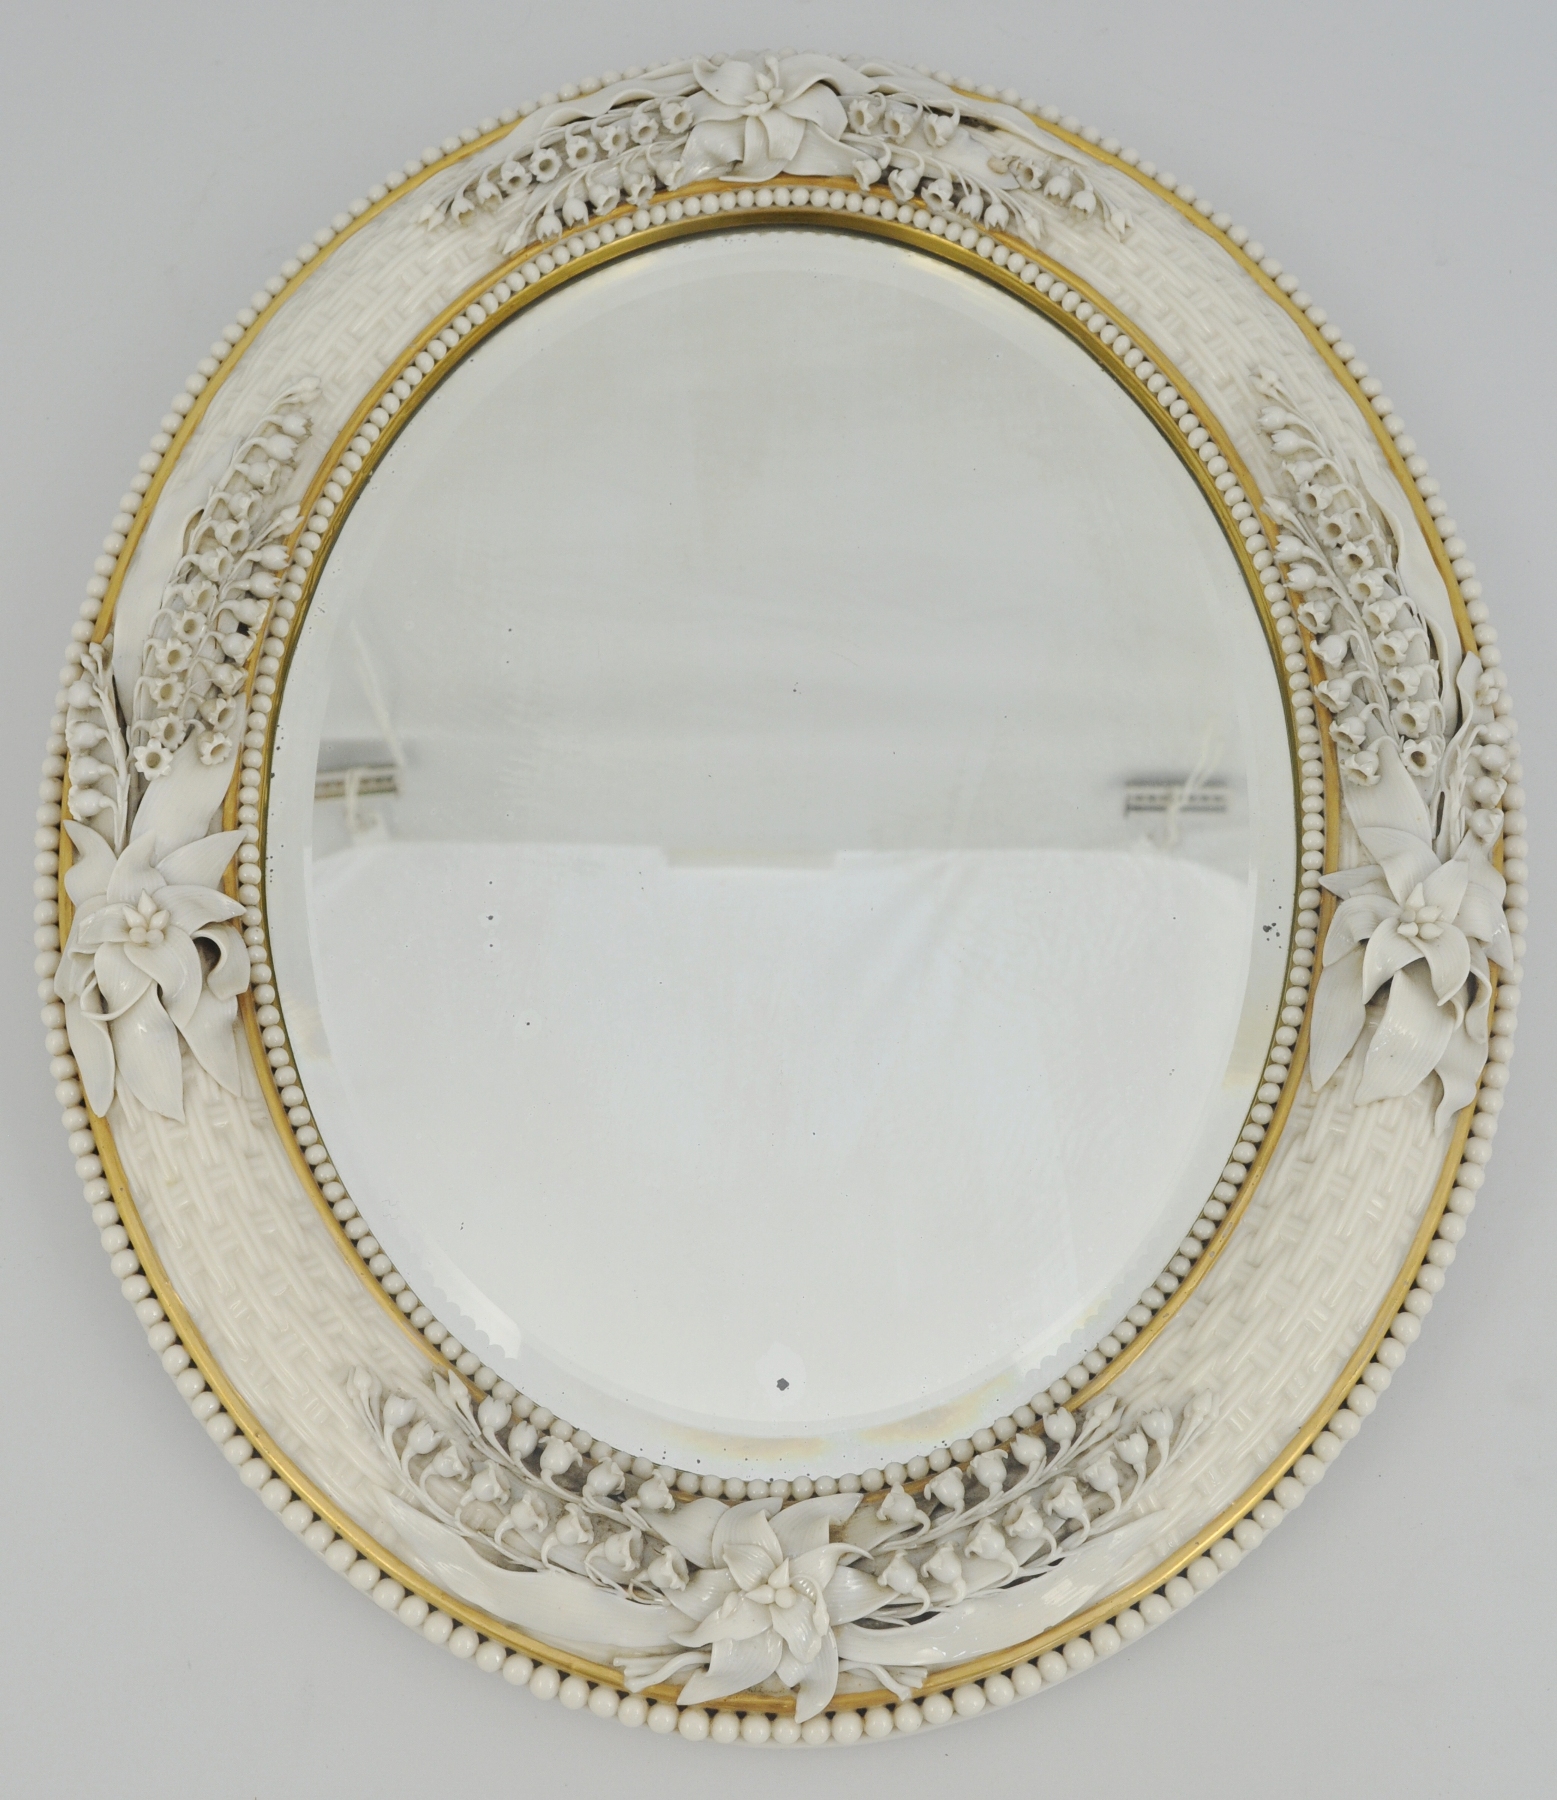 Porcelain mounted oval mirror, probably Belleek, basket weave moulded, - Image 2 of 2